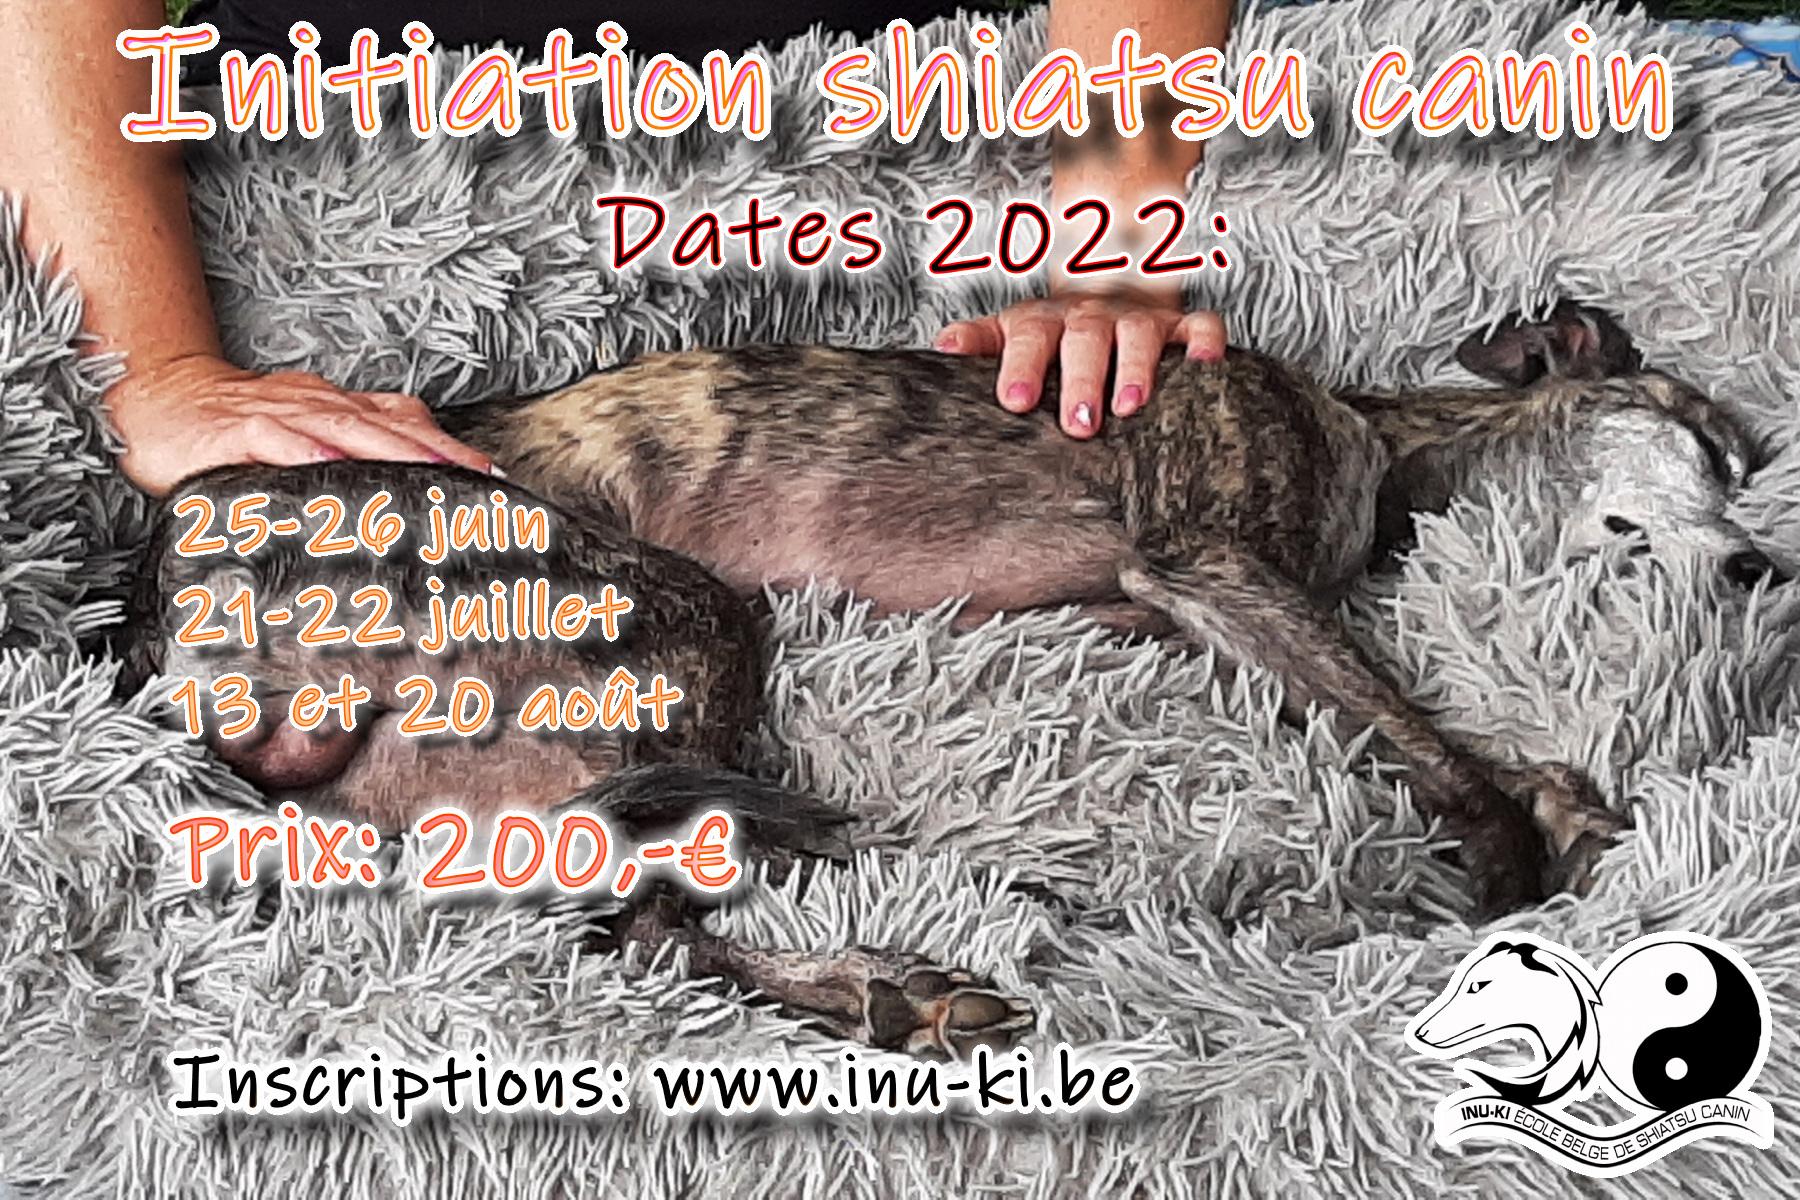 Initiation shiatsu canin 2022